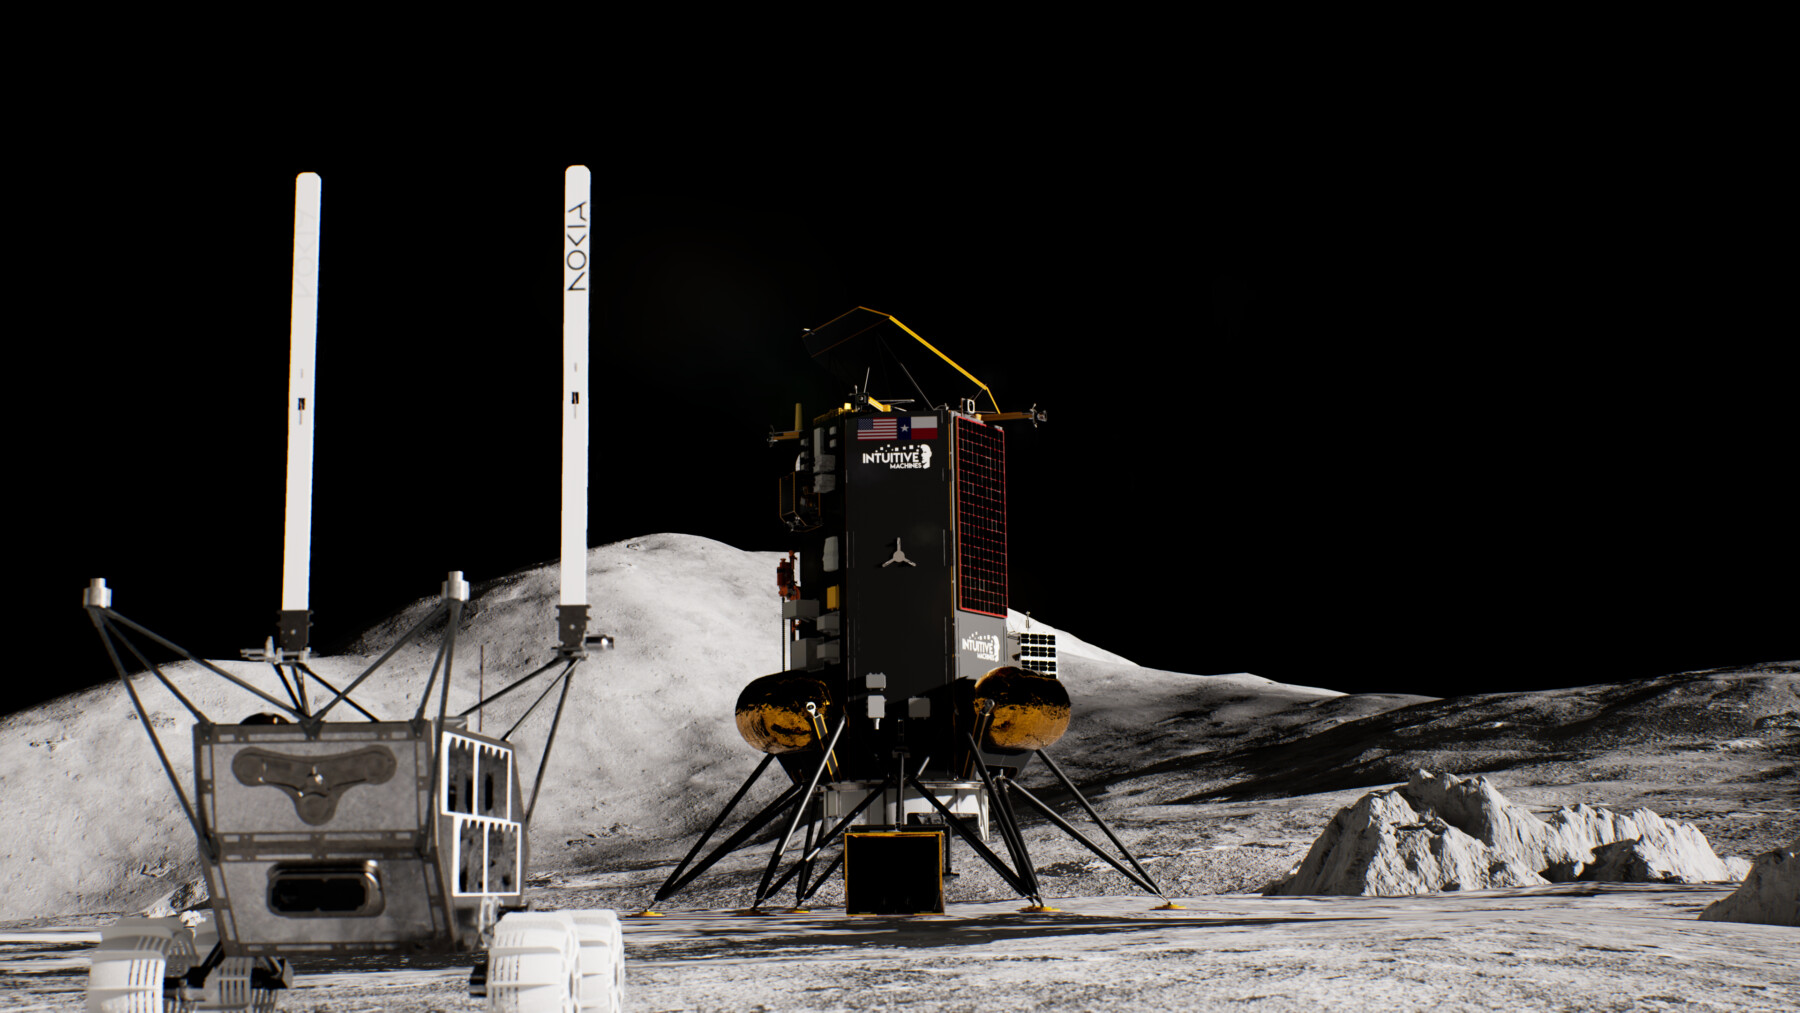 Un pequeño vehículo robótico se aleja de una nave espacial sobre una superficie rocosa de color gris, contra un fondo de cielo negro.